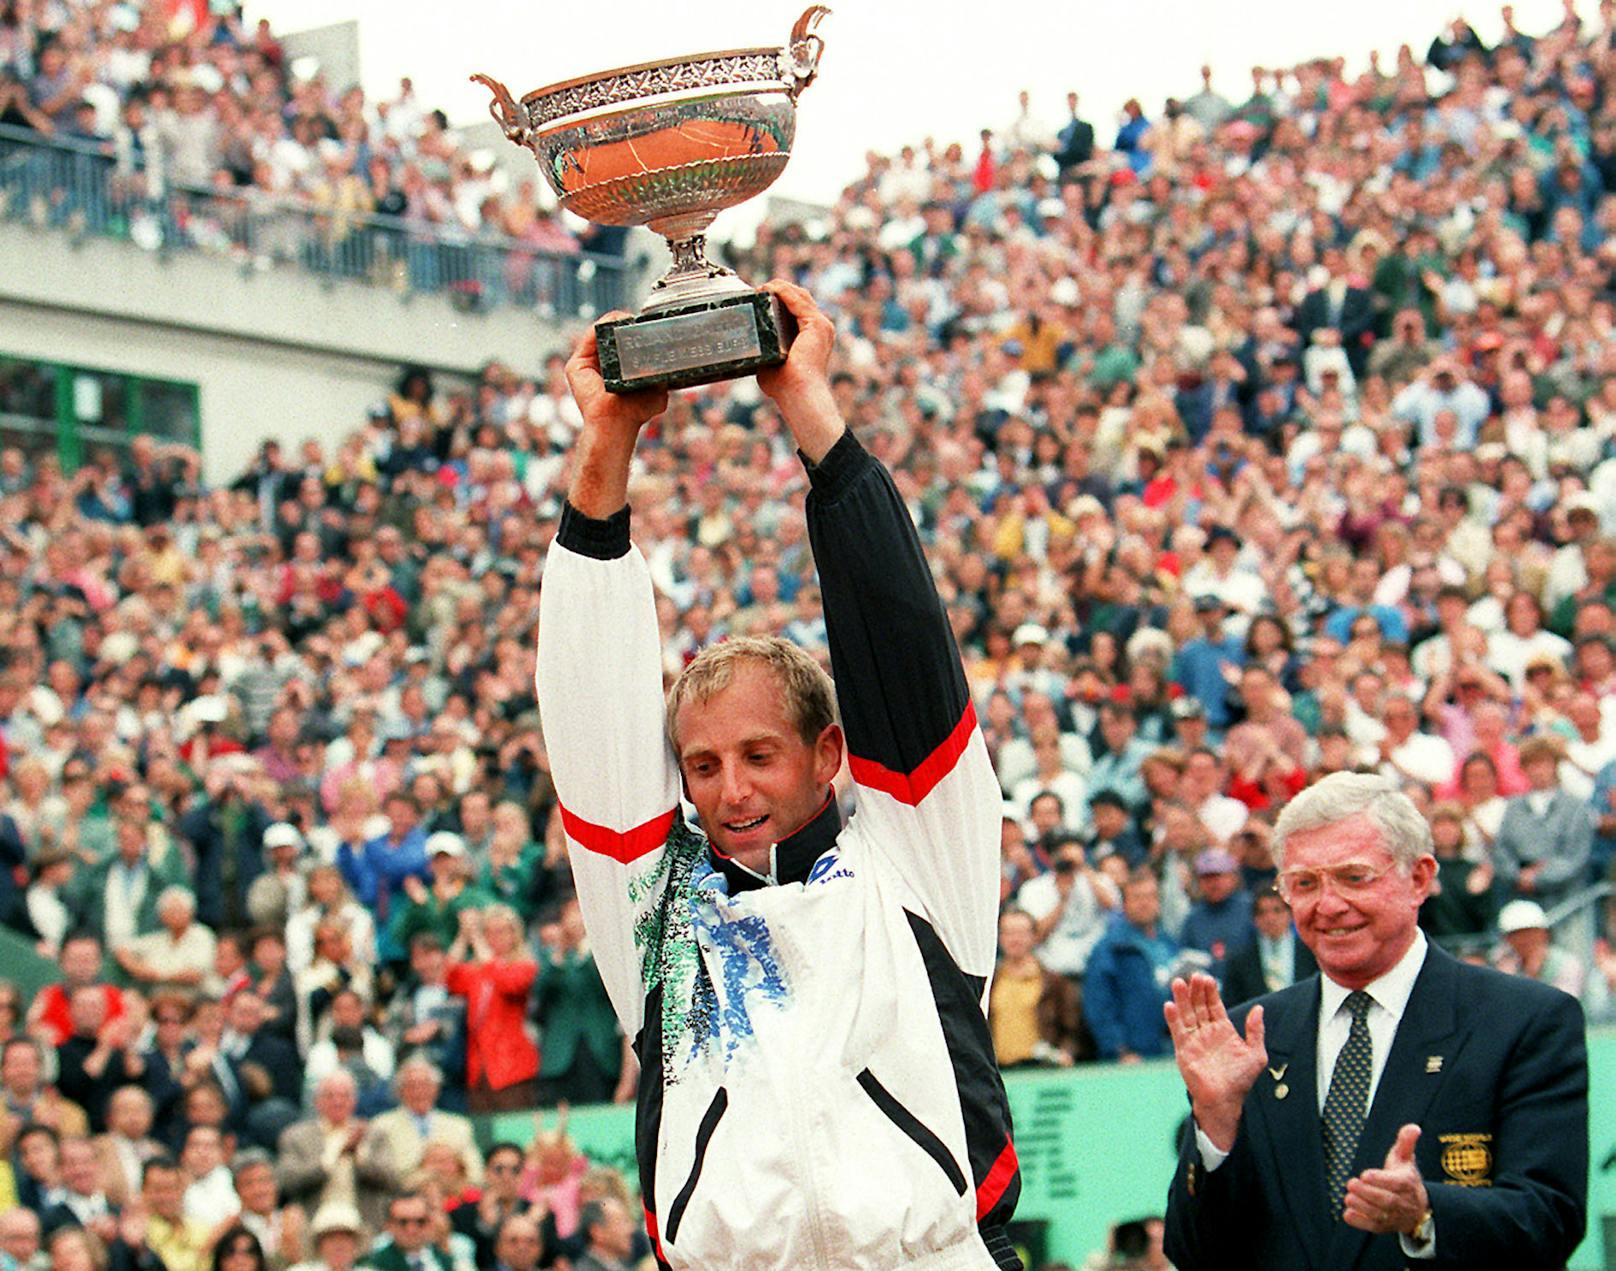 Thomas Muster stemmte stolz den Pokal. Er war sechs Wochen lang die Nummer 1 der Tenniswelt und damit immer noch der erfolgreichste Spieler Österreichs. Insgesamt gewann er 44 Einzel-Turniere.